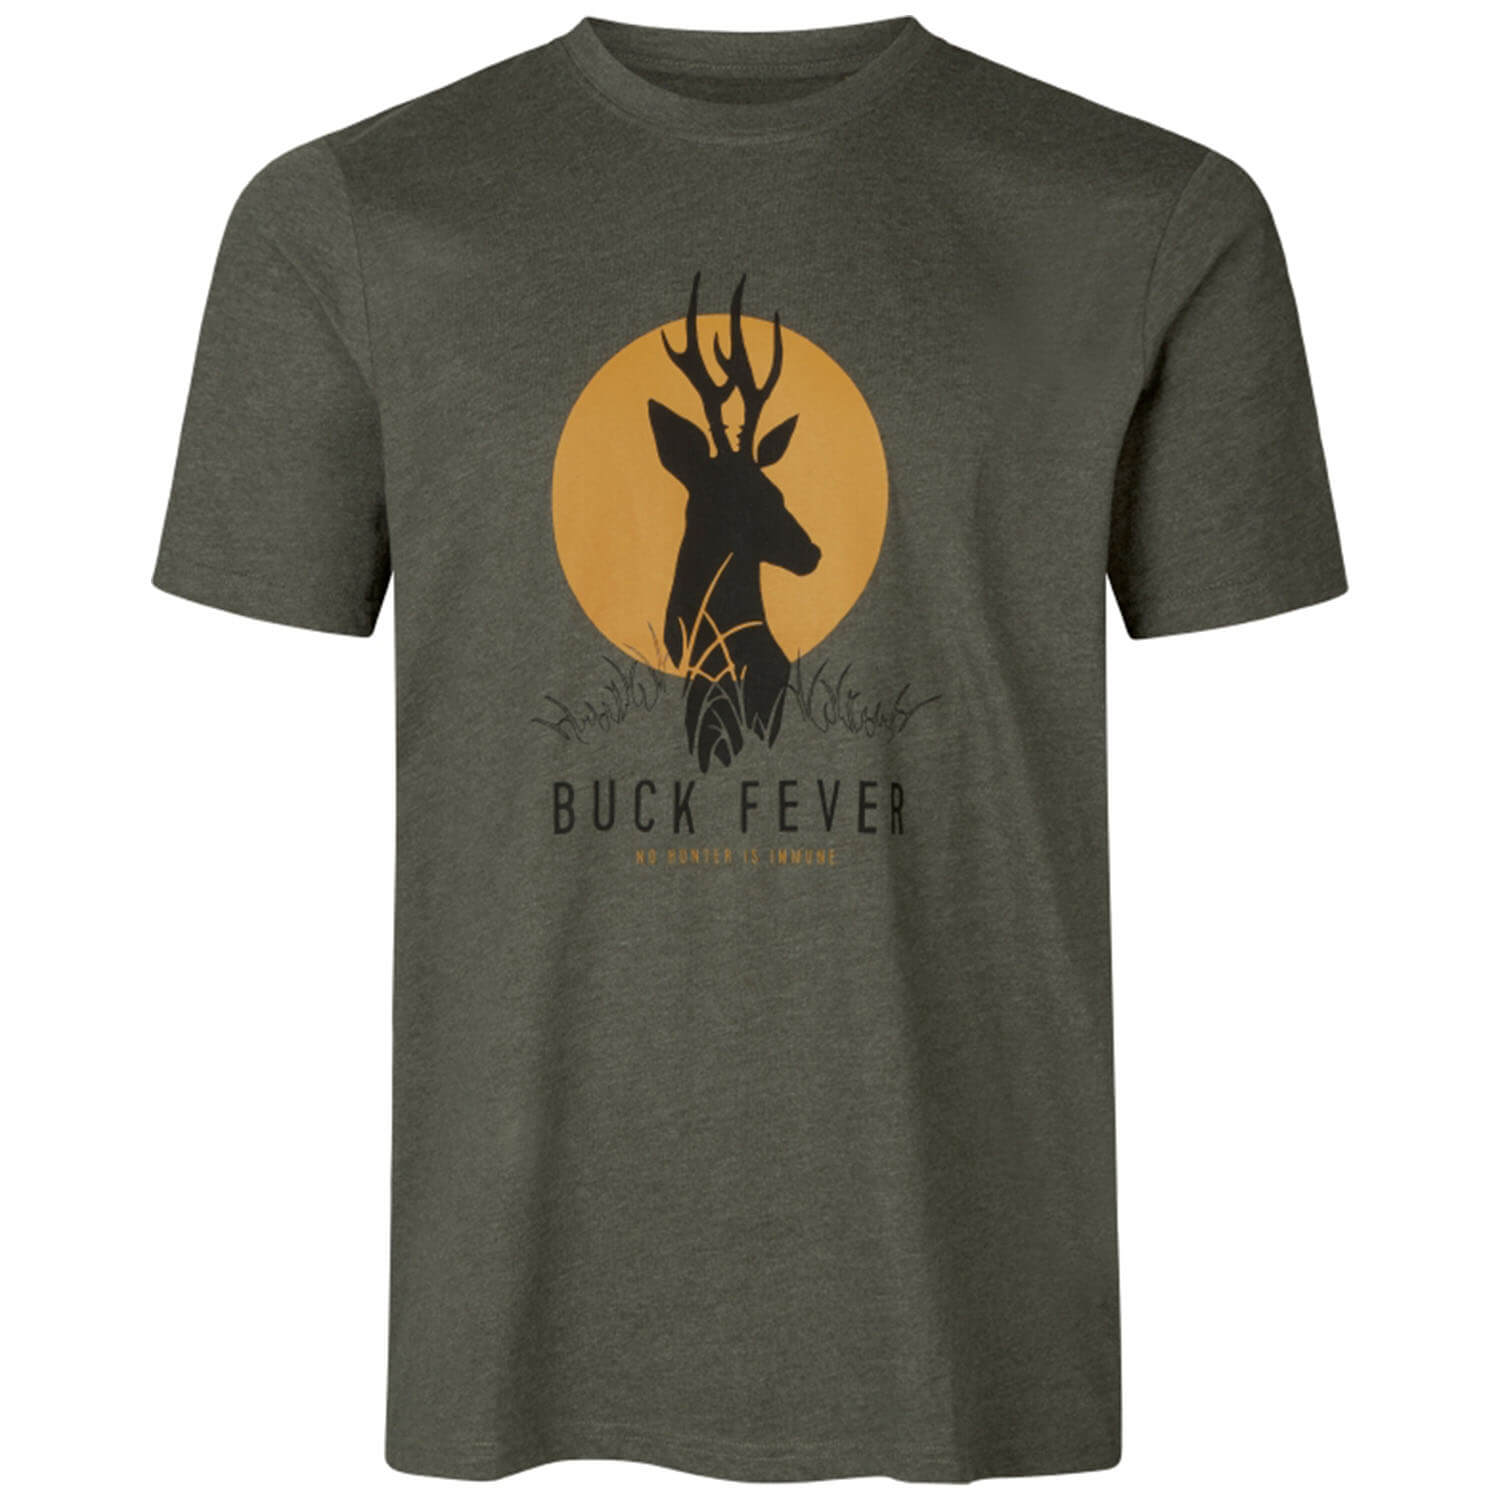  Seeland T-shirt Buck Fever (Dennengroen)